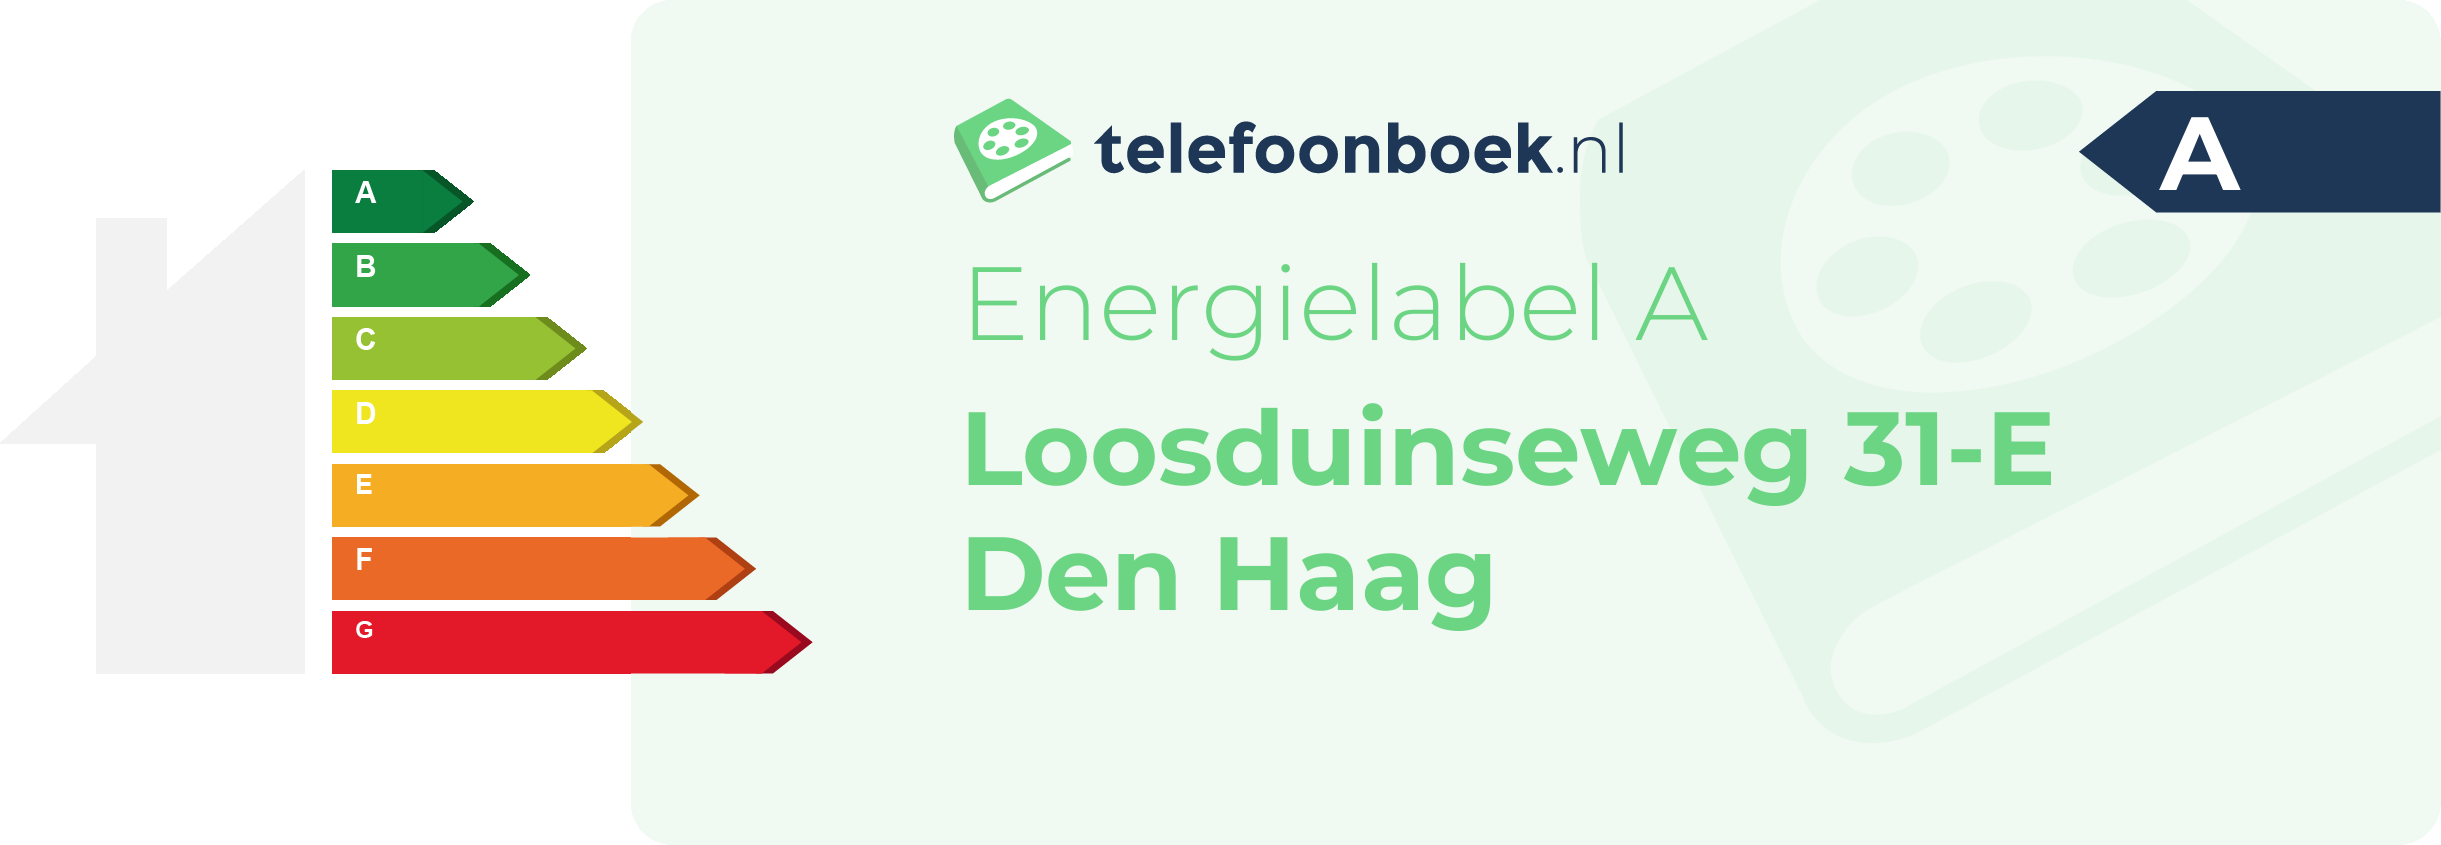 Energielabel Loosduinseweg 31-E Den Haag